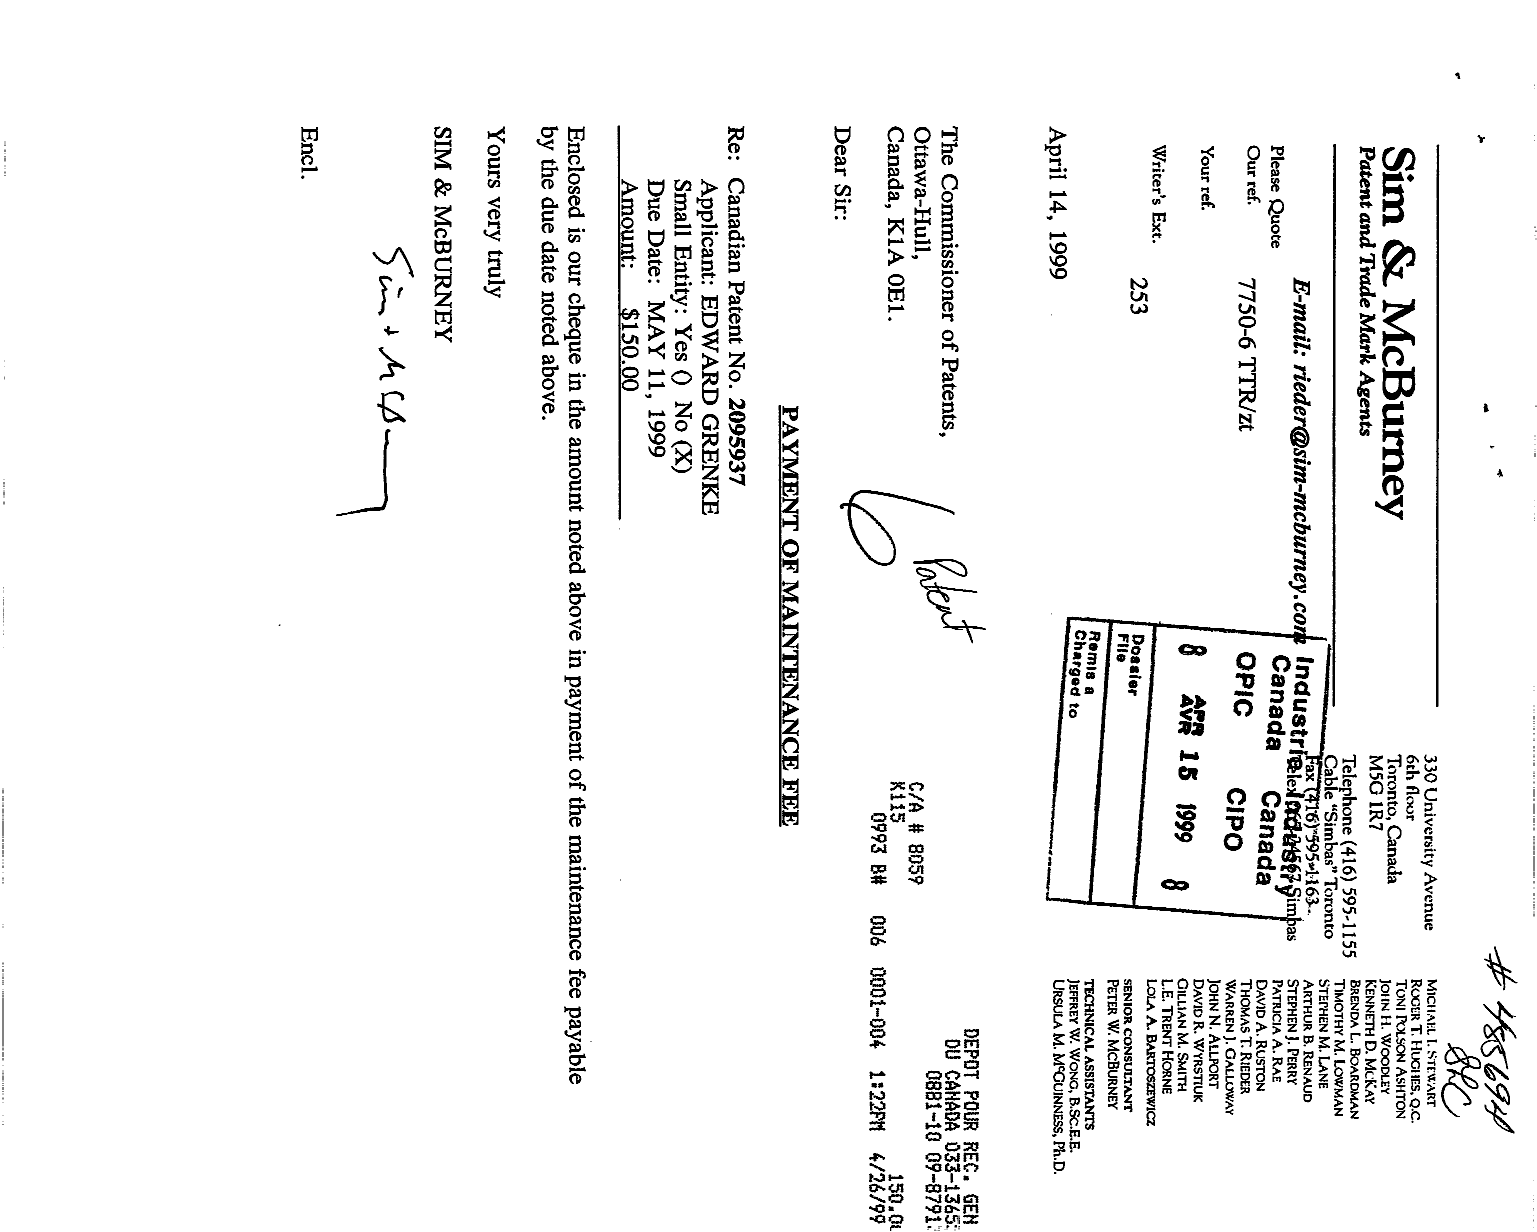 Document de brevet canadien 2095937. Taxes 19981215. Image 1 de 1